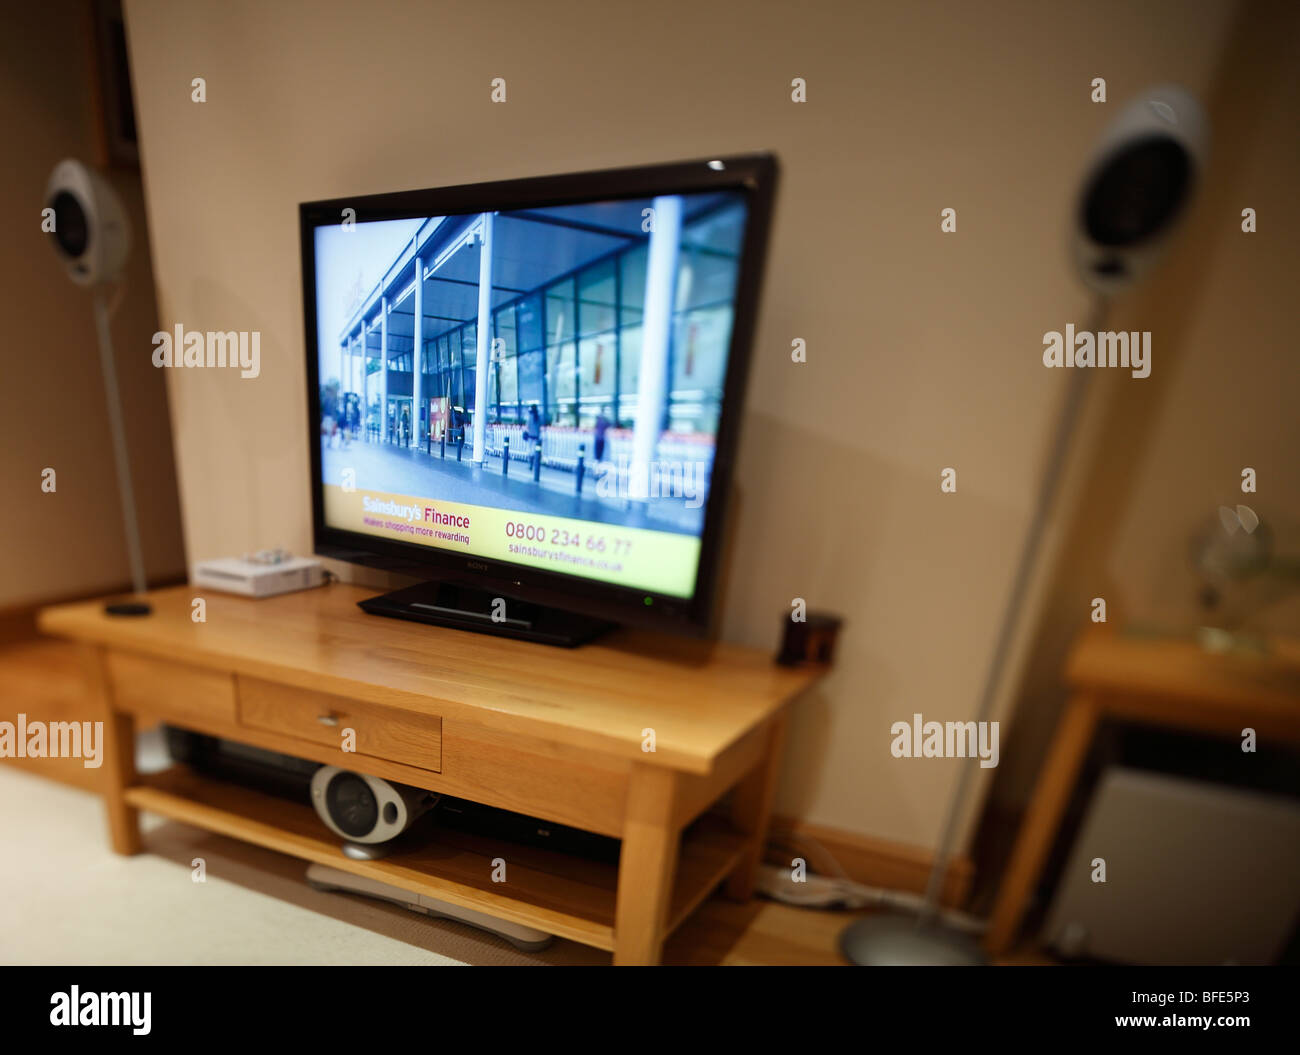 Flachbild-TV mit Surround-Sound. (Hinweis: Bild hat eine geringe Schärfentiefe). Stockfoto